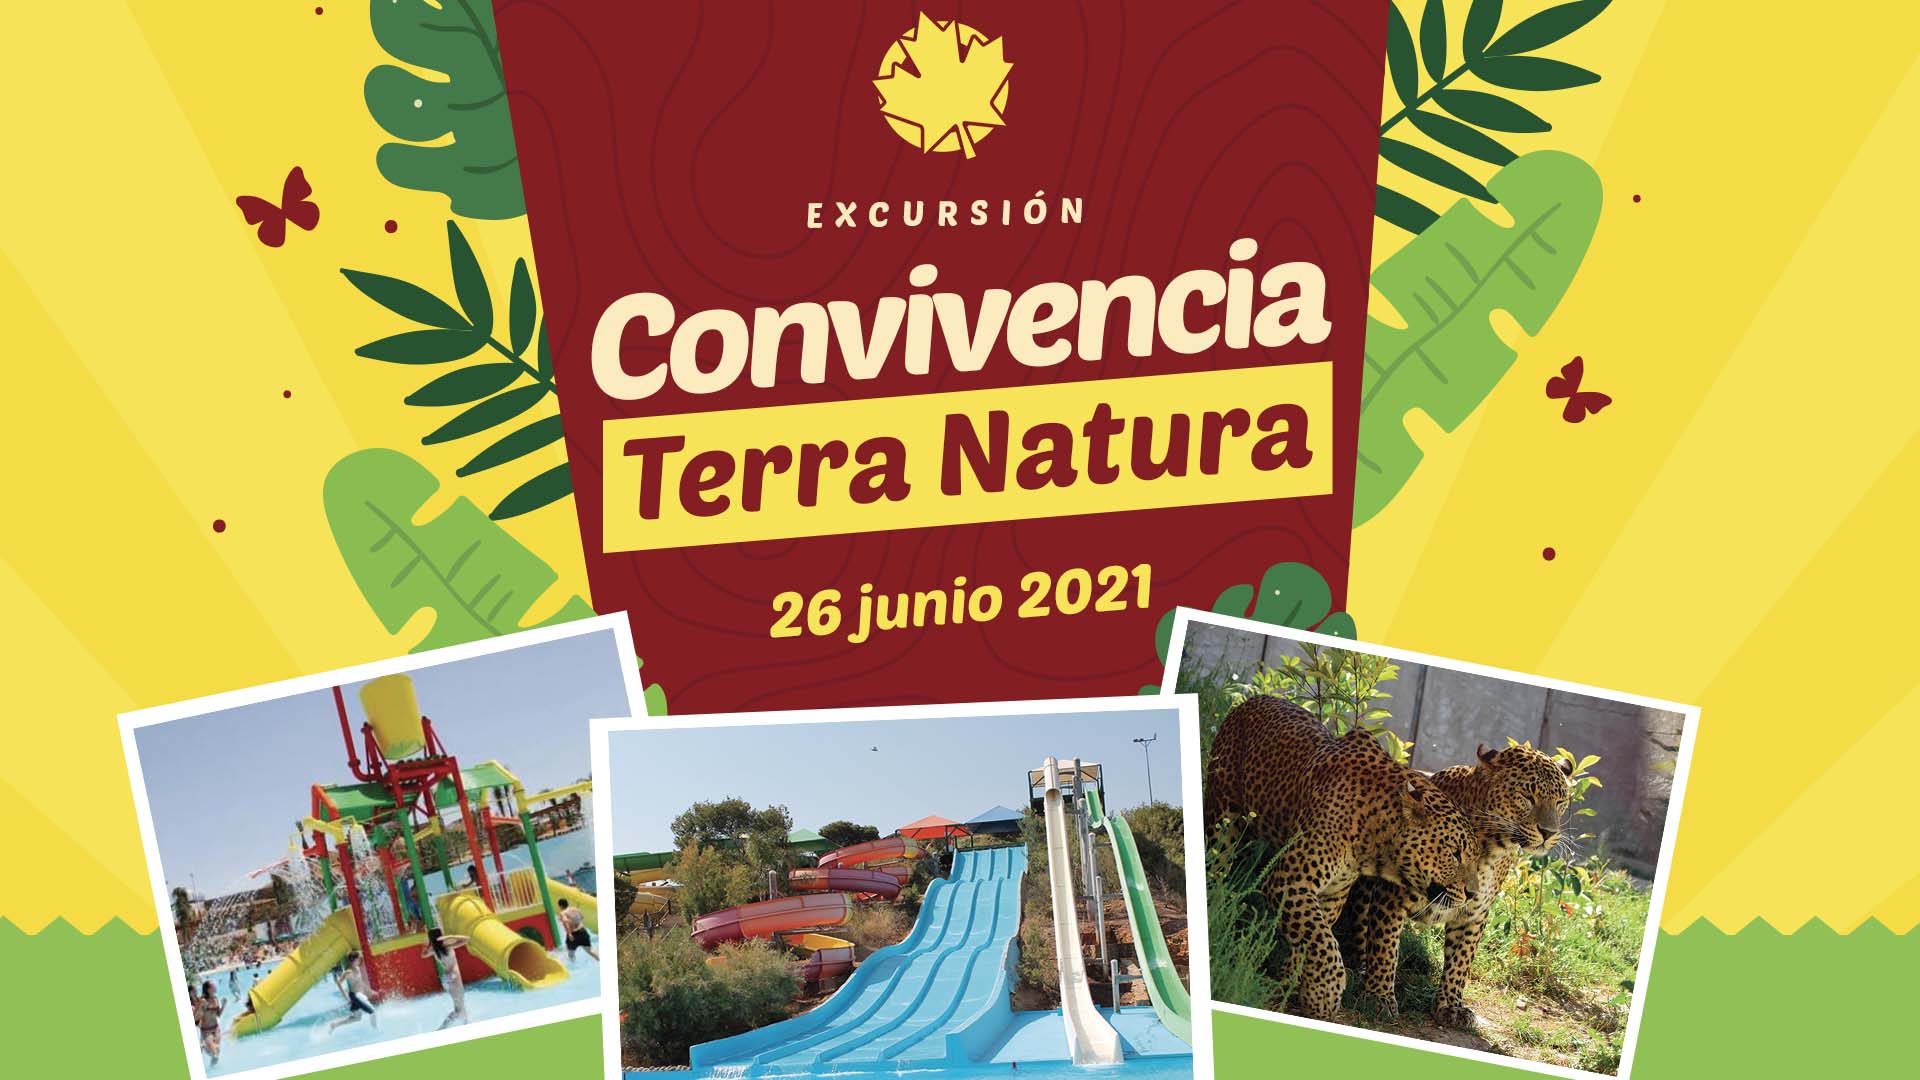 Excursión Convivencia a Terra Natura 2021